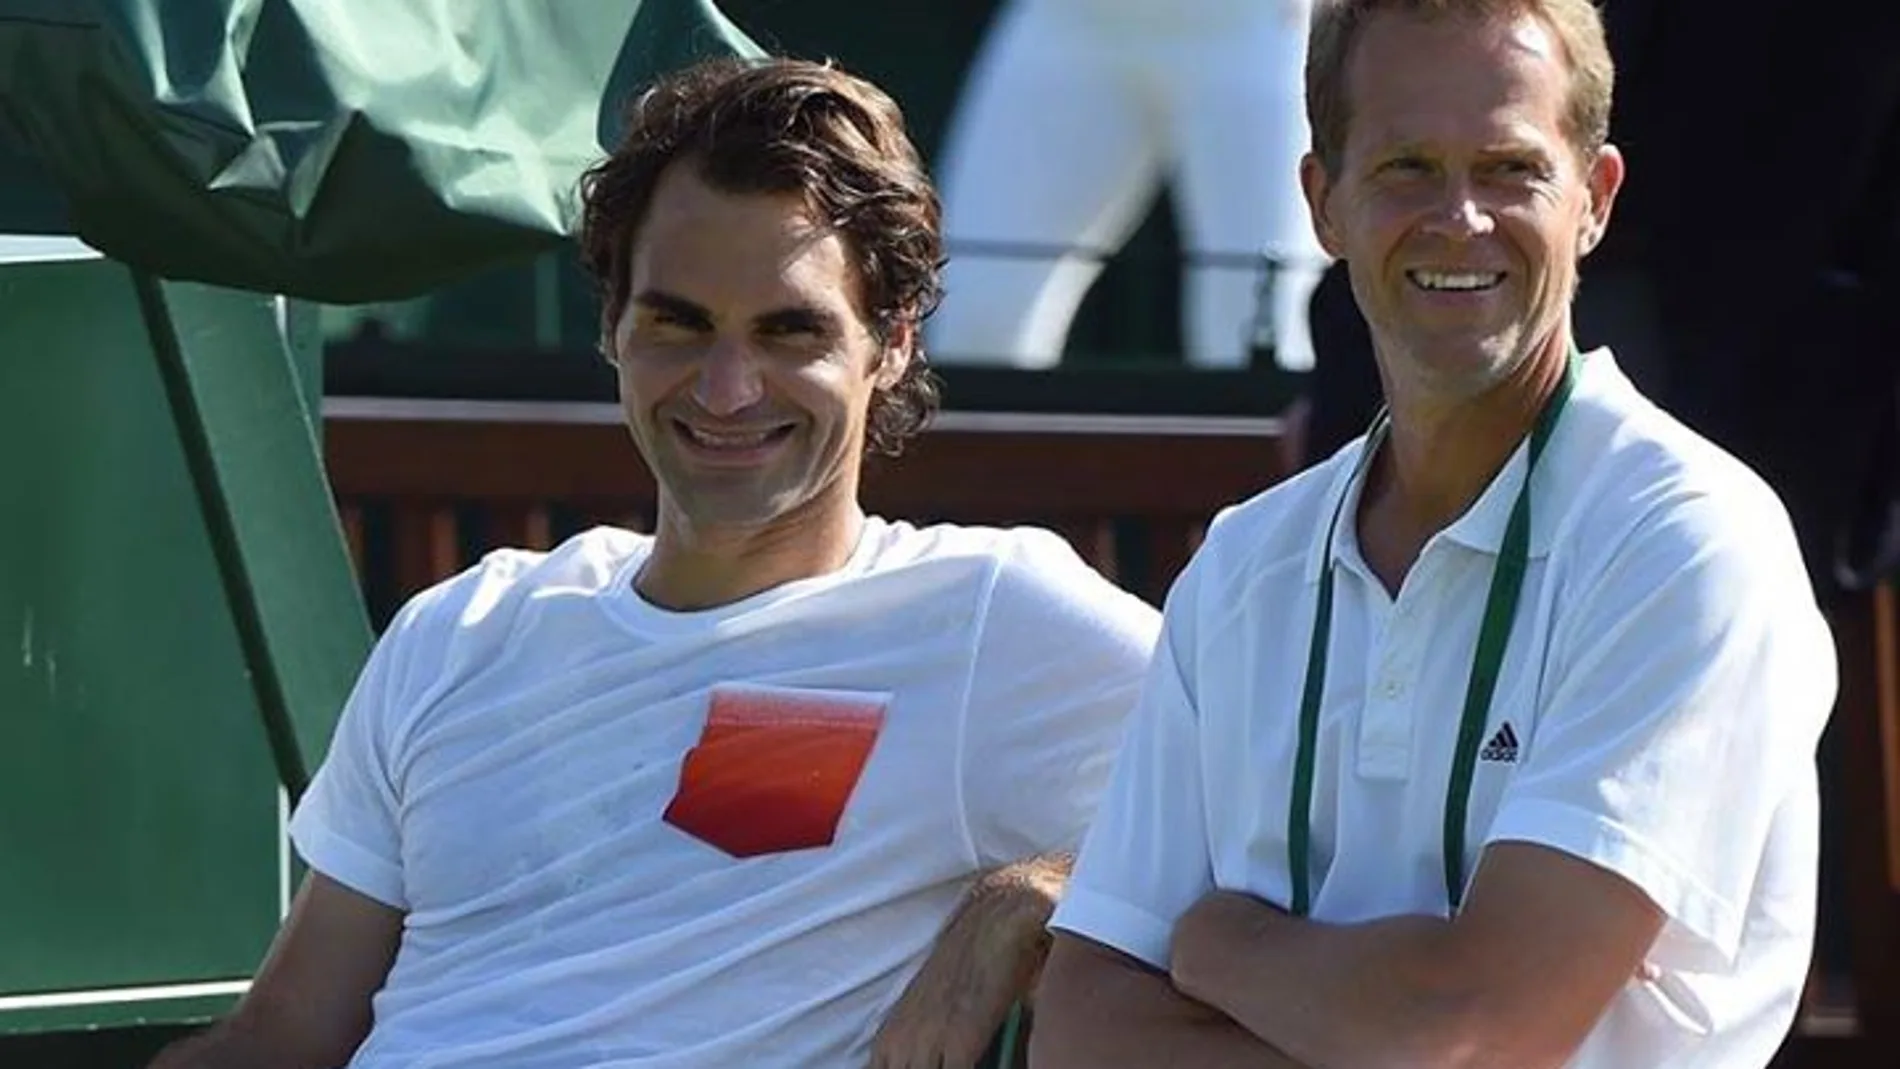 Una imagen de Federer y Edberg juntos que el tenista suizo ha subido a su cuenta de Facebook.